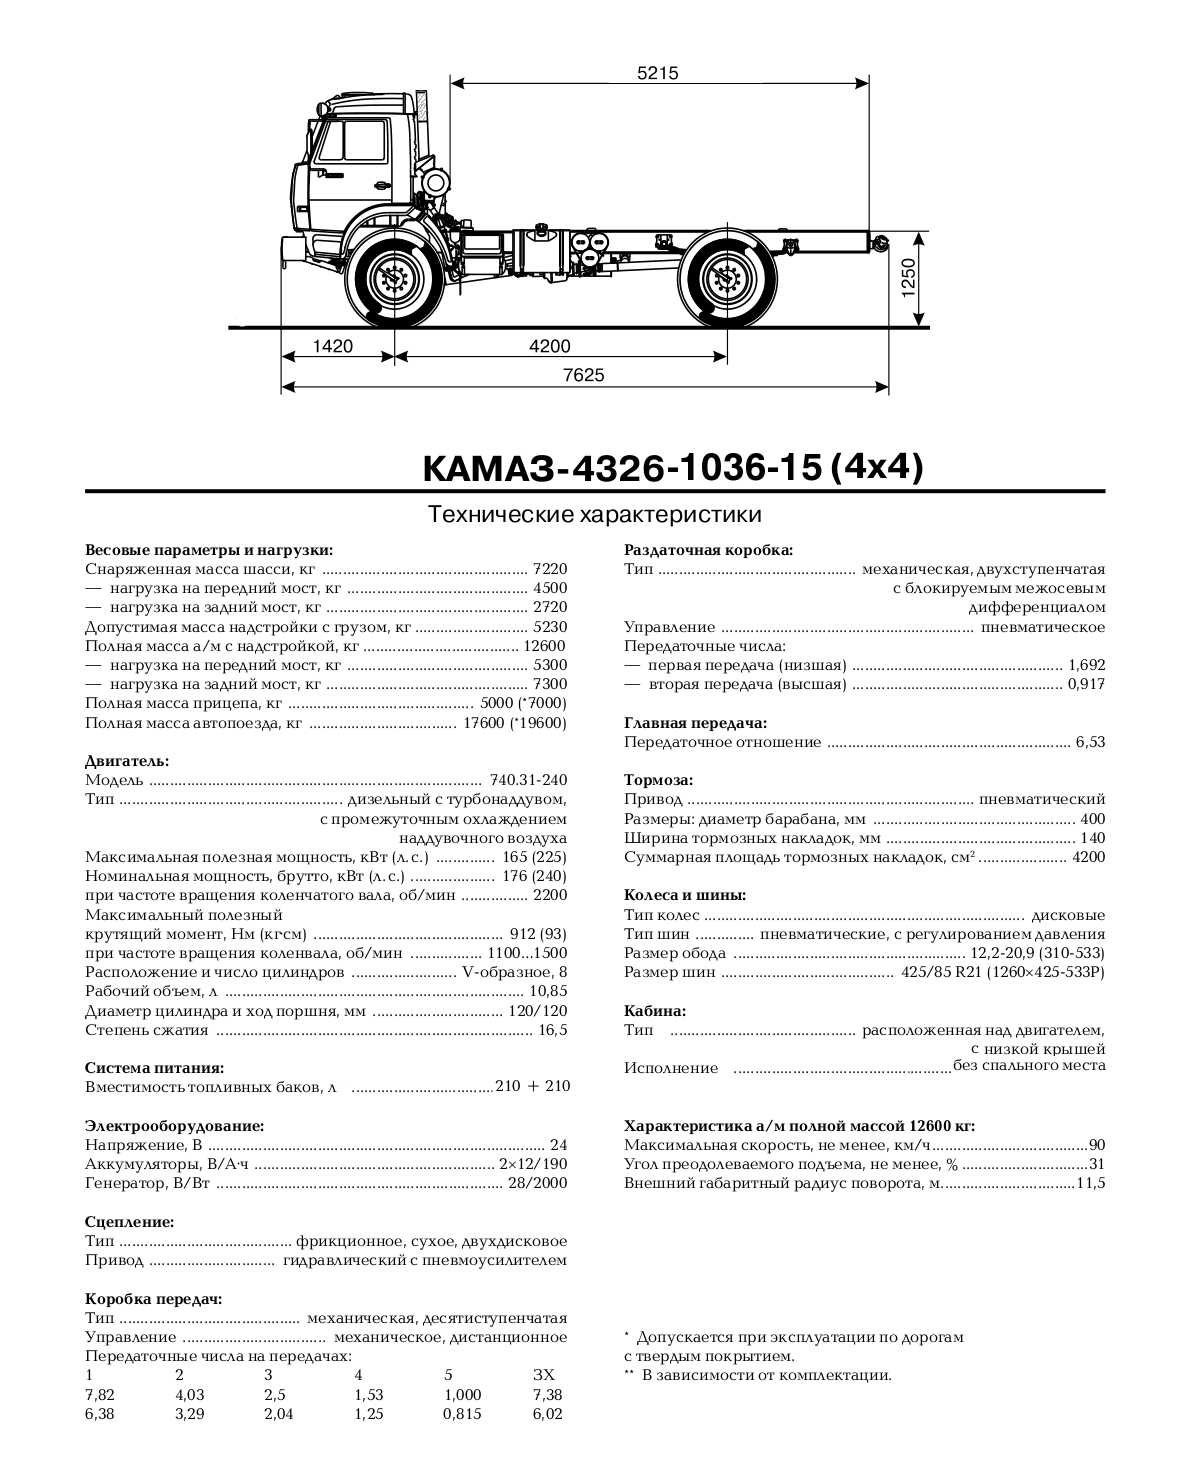 Камаз-4326 - технические характеристики, фото, видео, модификации, обзор